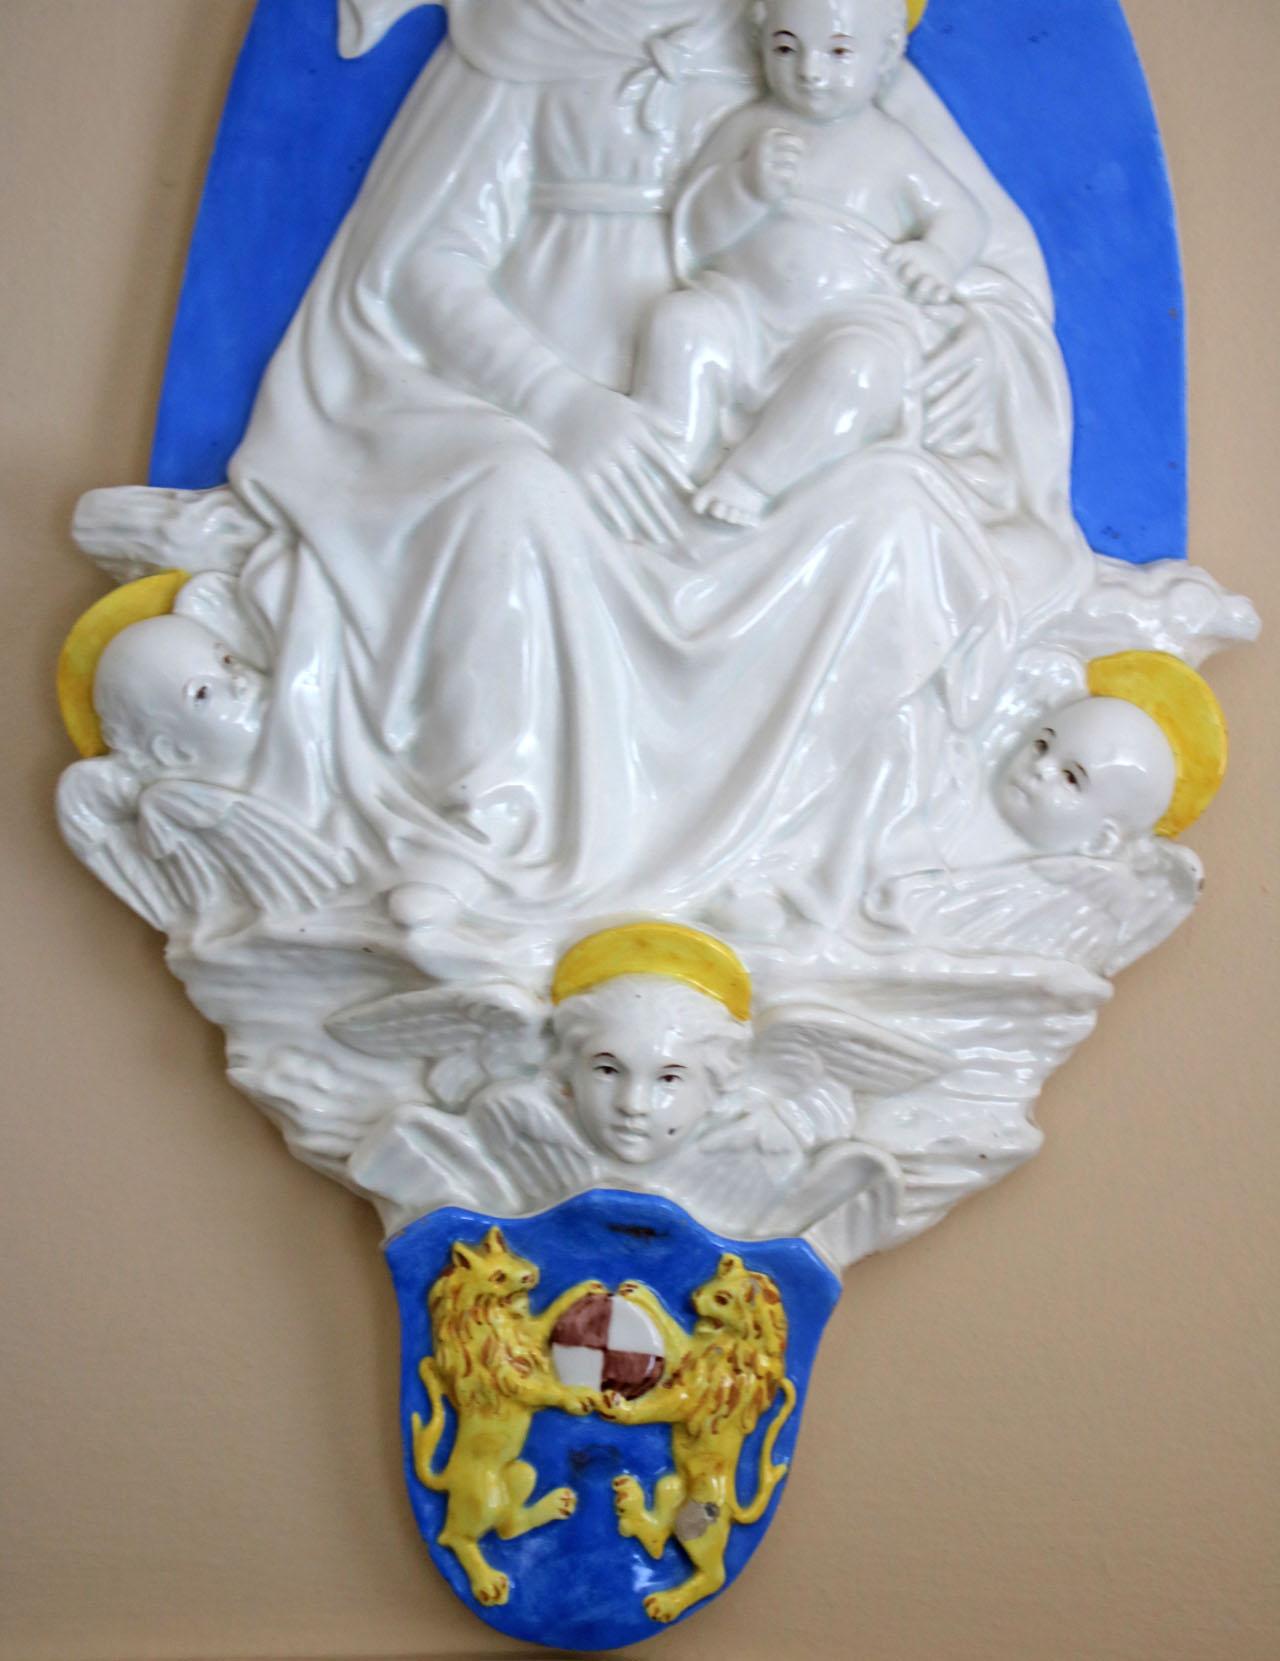 Magnifique relief religieux en porcelaine représentant une Vierge avec des anges.